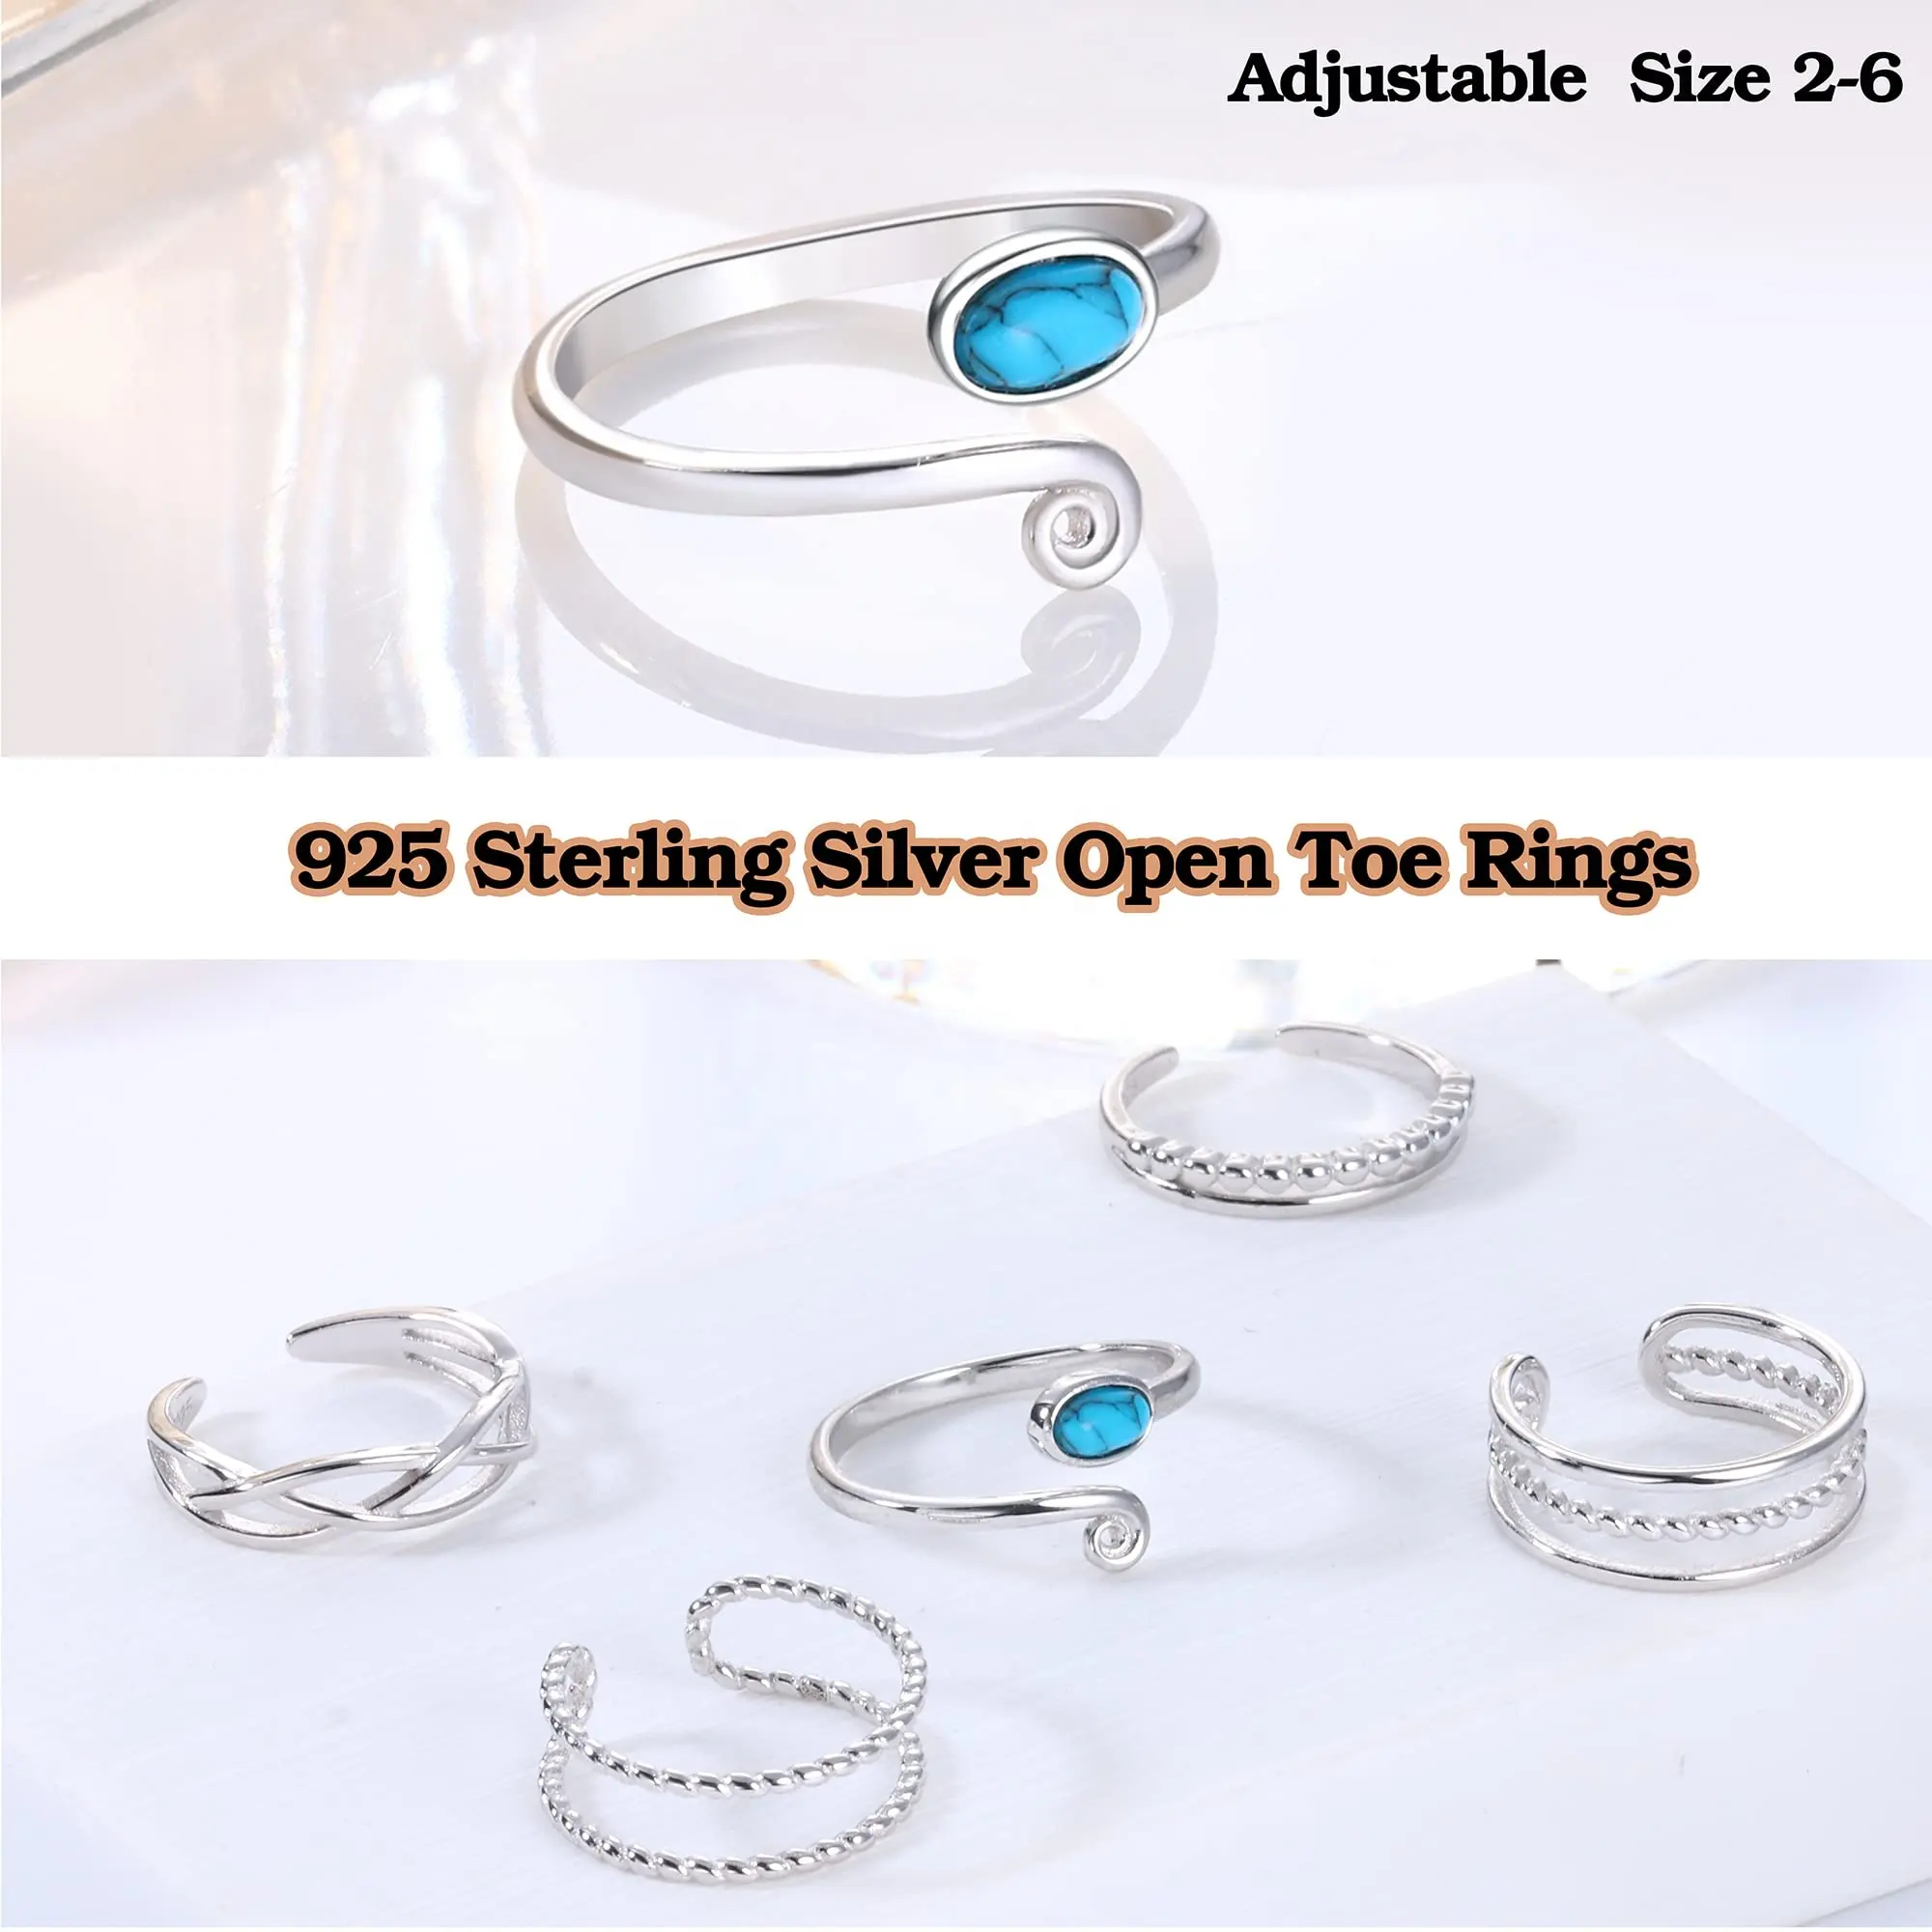 Anneau d'orteil en argent Sterling 925, bijoux de pied, anneau d'orteil ouvert, vente en gros, anneau réglable en argent